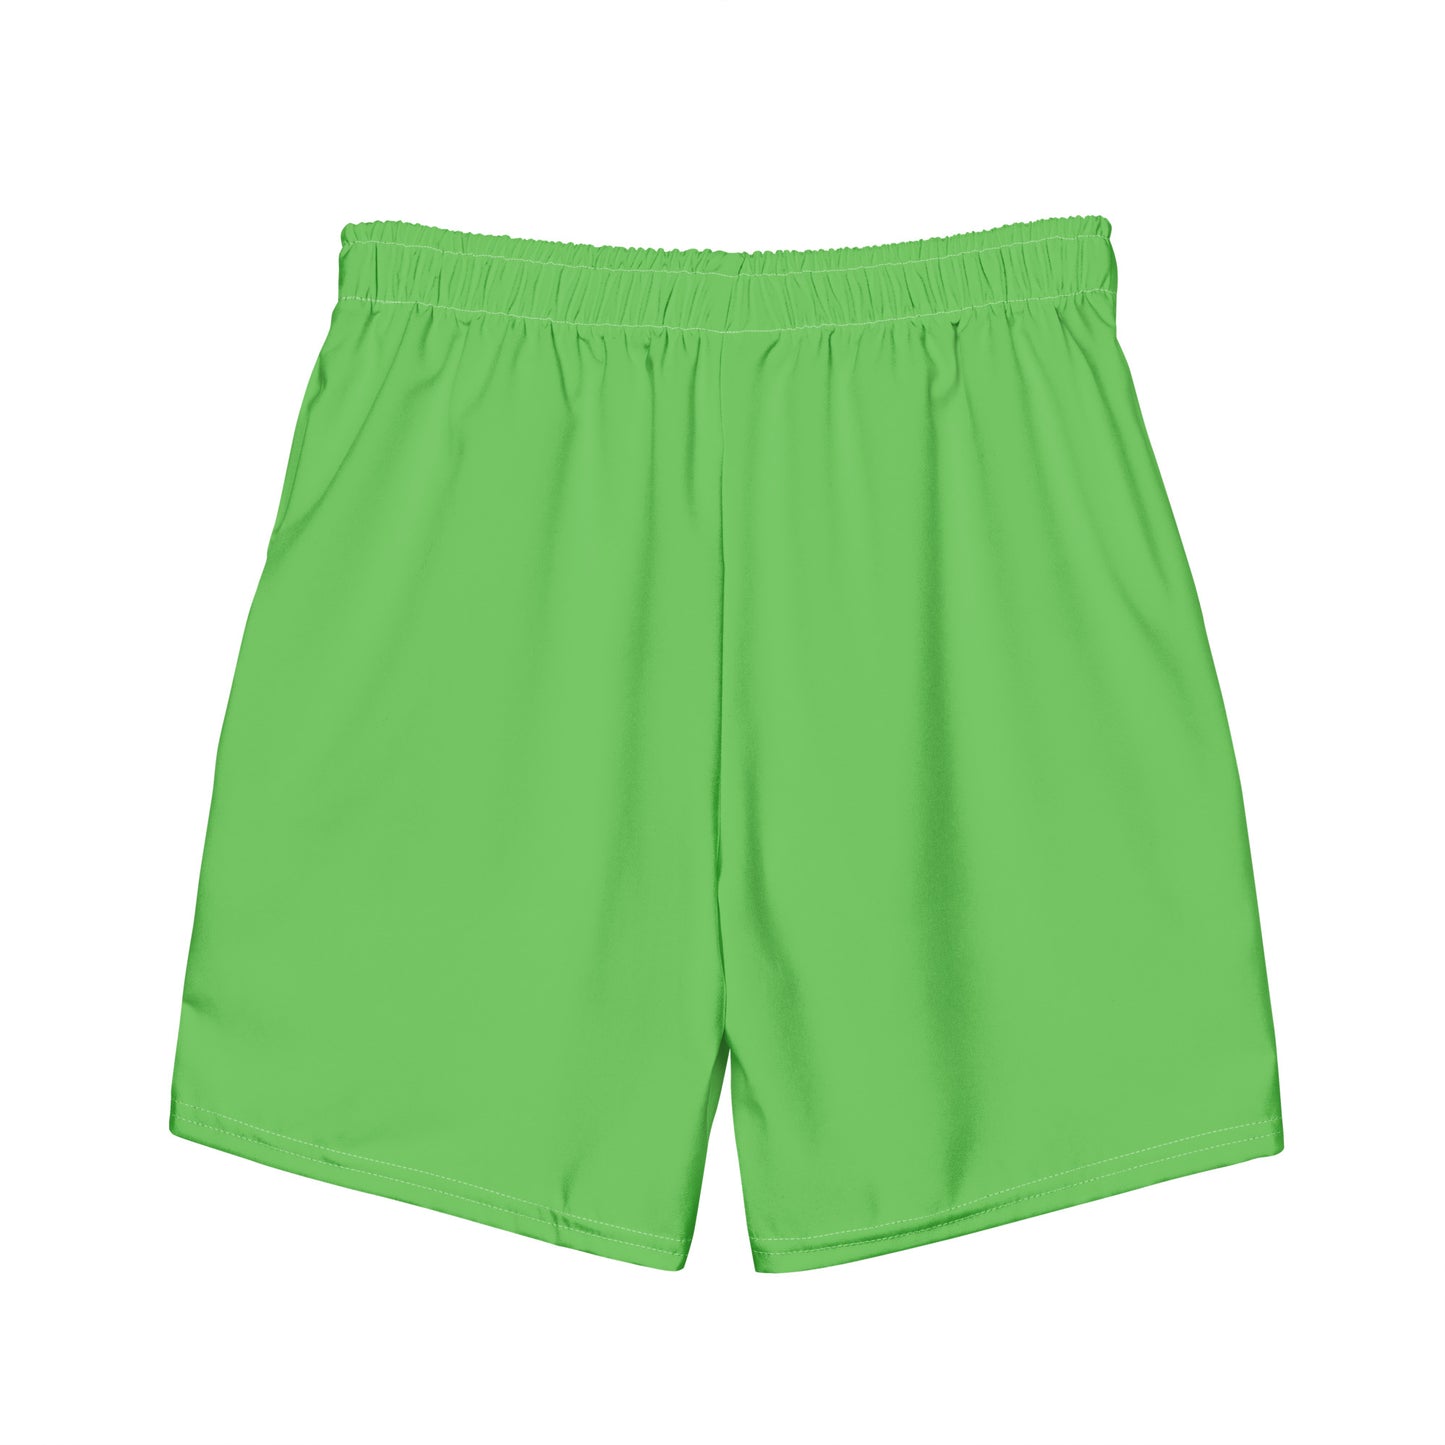 Green Apple - Sustainably Made Men's swim trunks